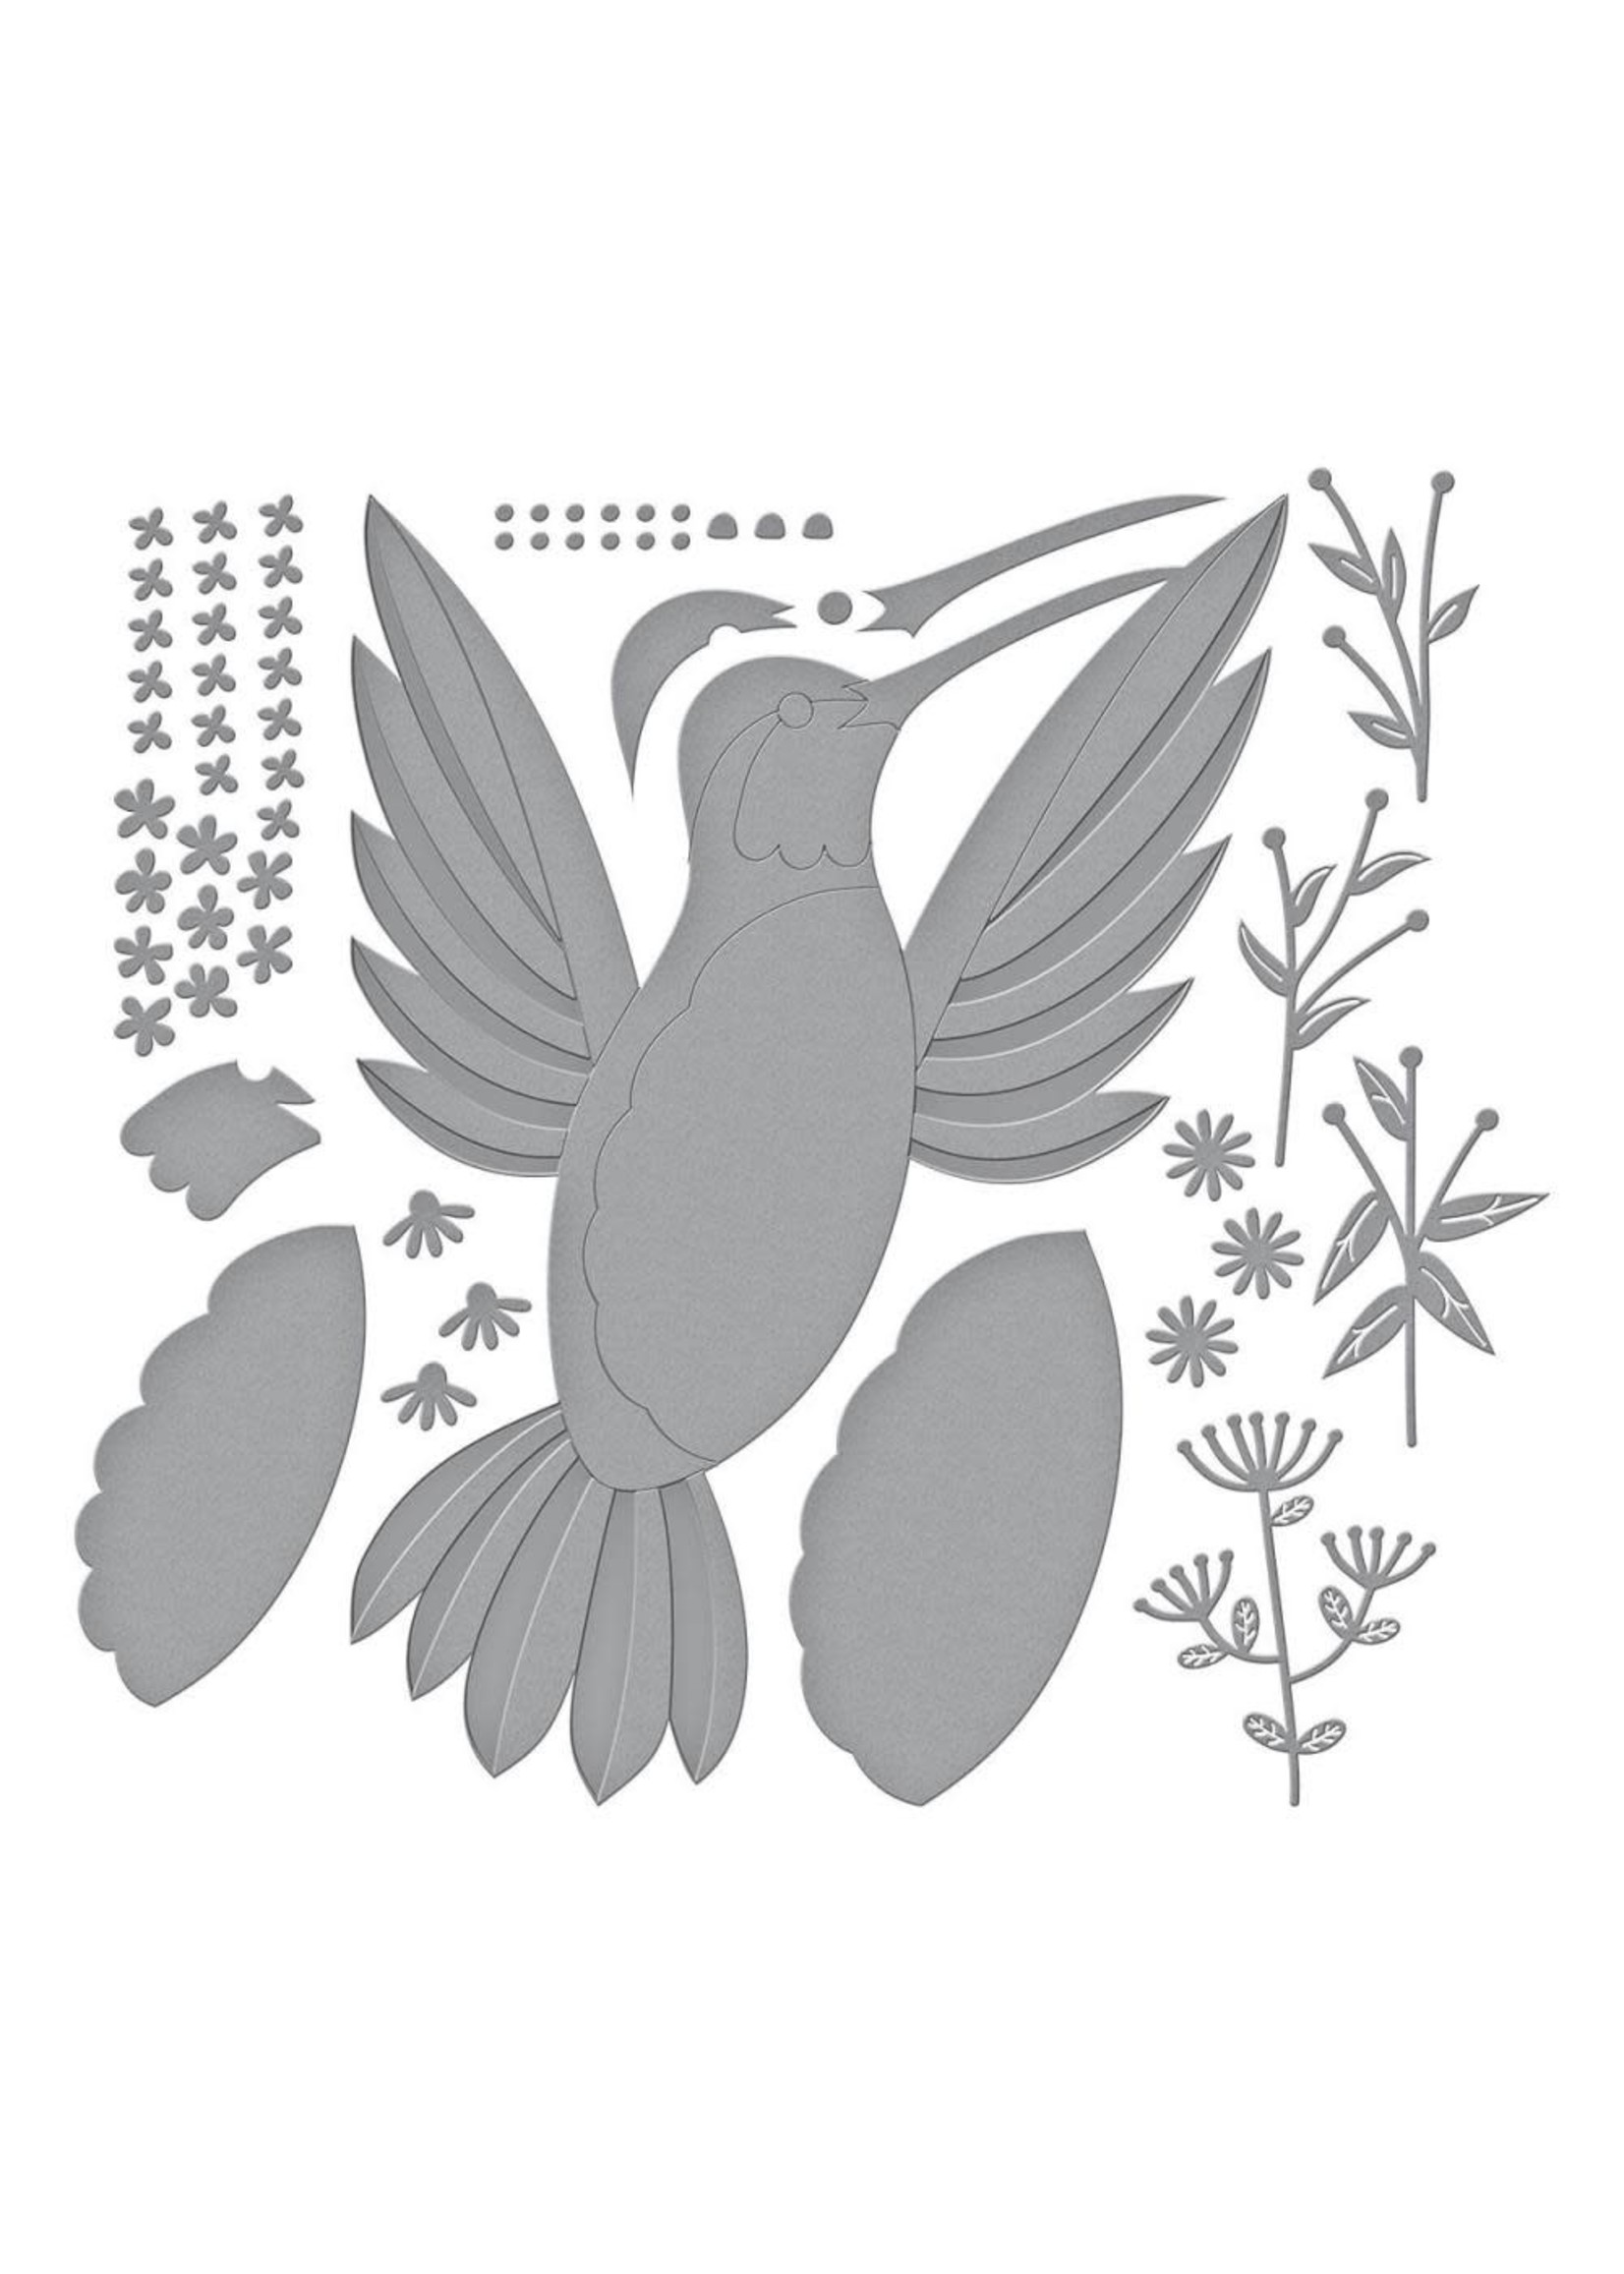 SPELLBINDERS PAPERCRAFTS, INC Hummingbird Card Creator Die